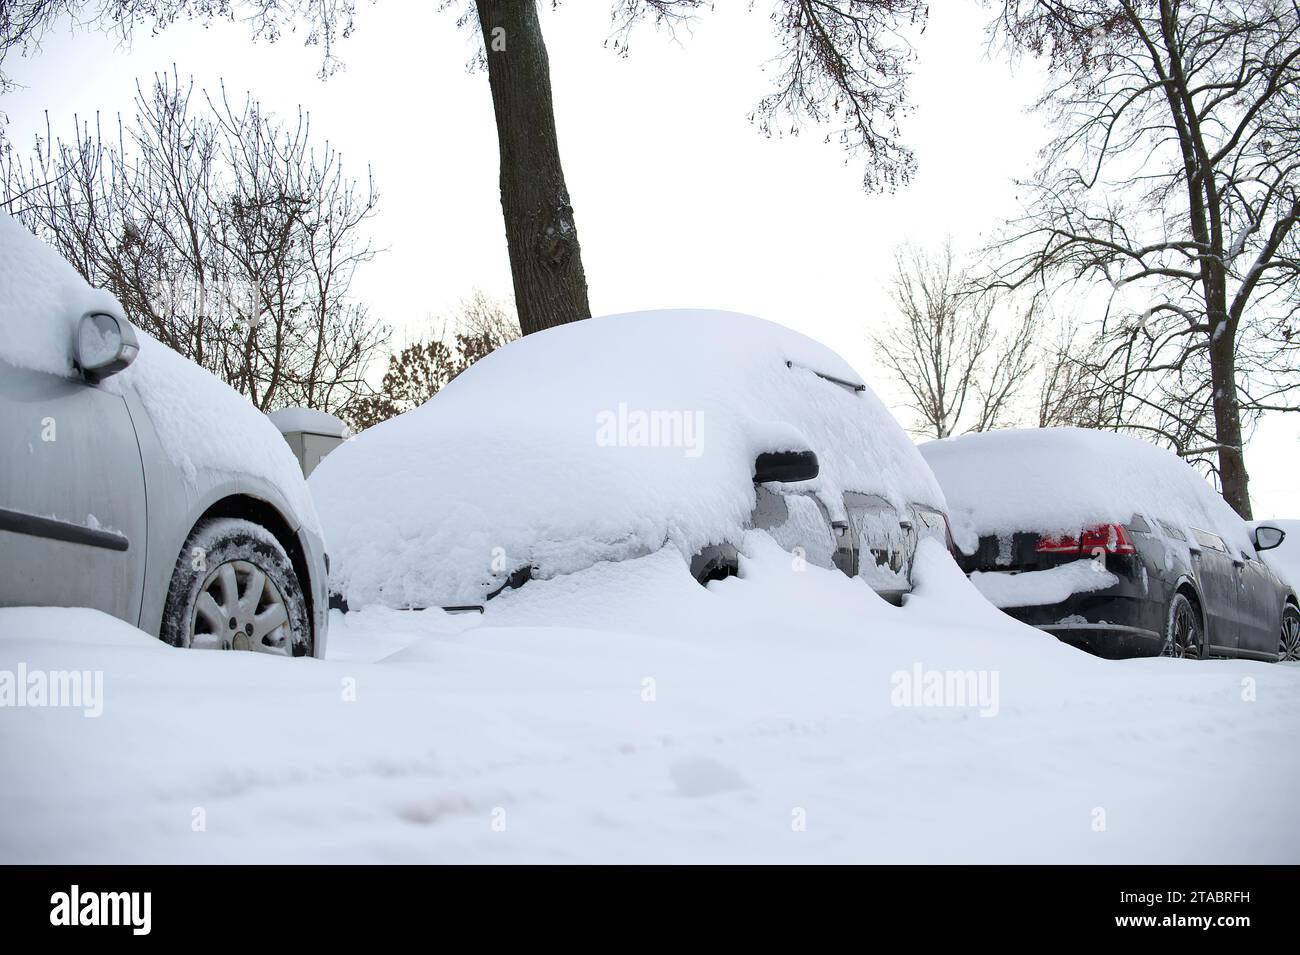 Scène hivernale où plusieurs voitures se sont fortement dissimulées sous une épaisse couche de neige, certaines voitures sont presque entièrement enfouies par la neige Banque D'Images